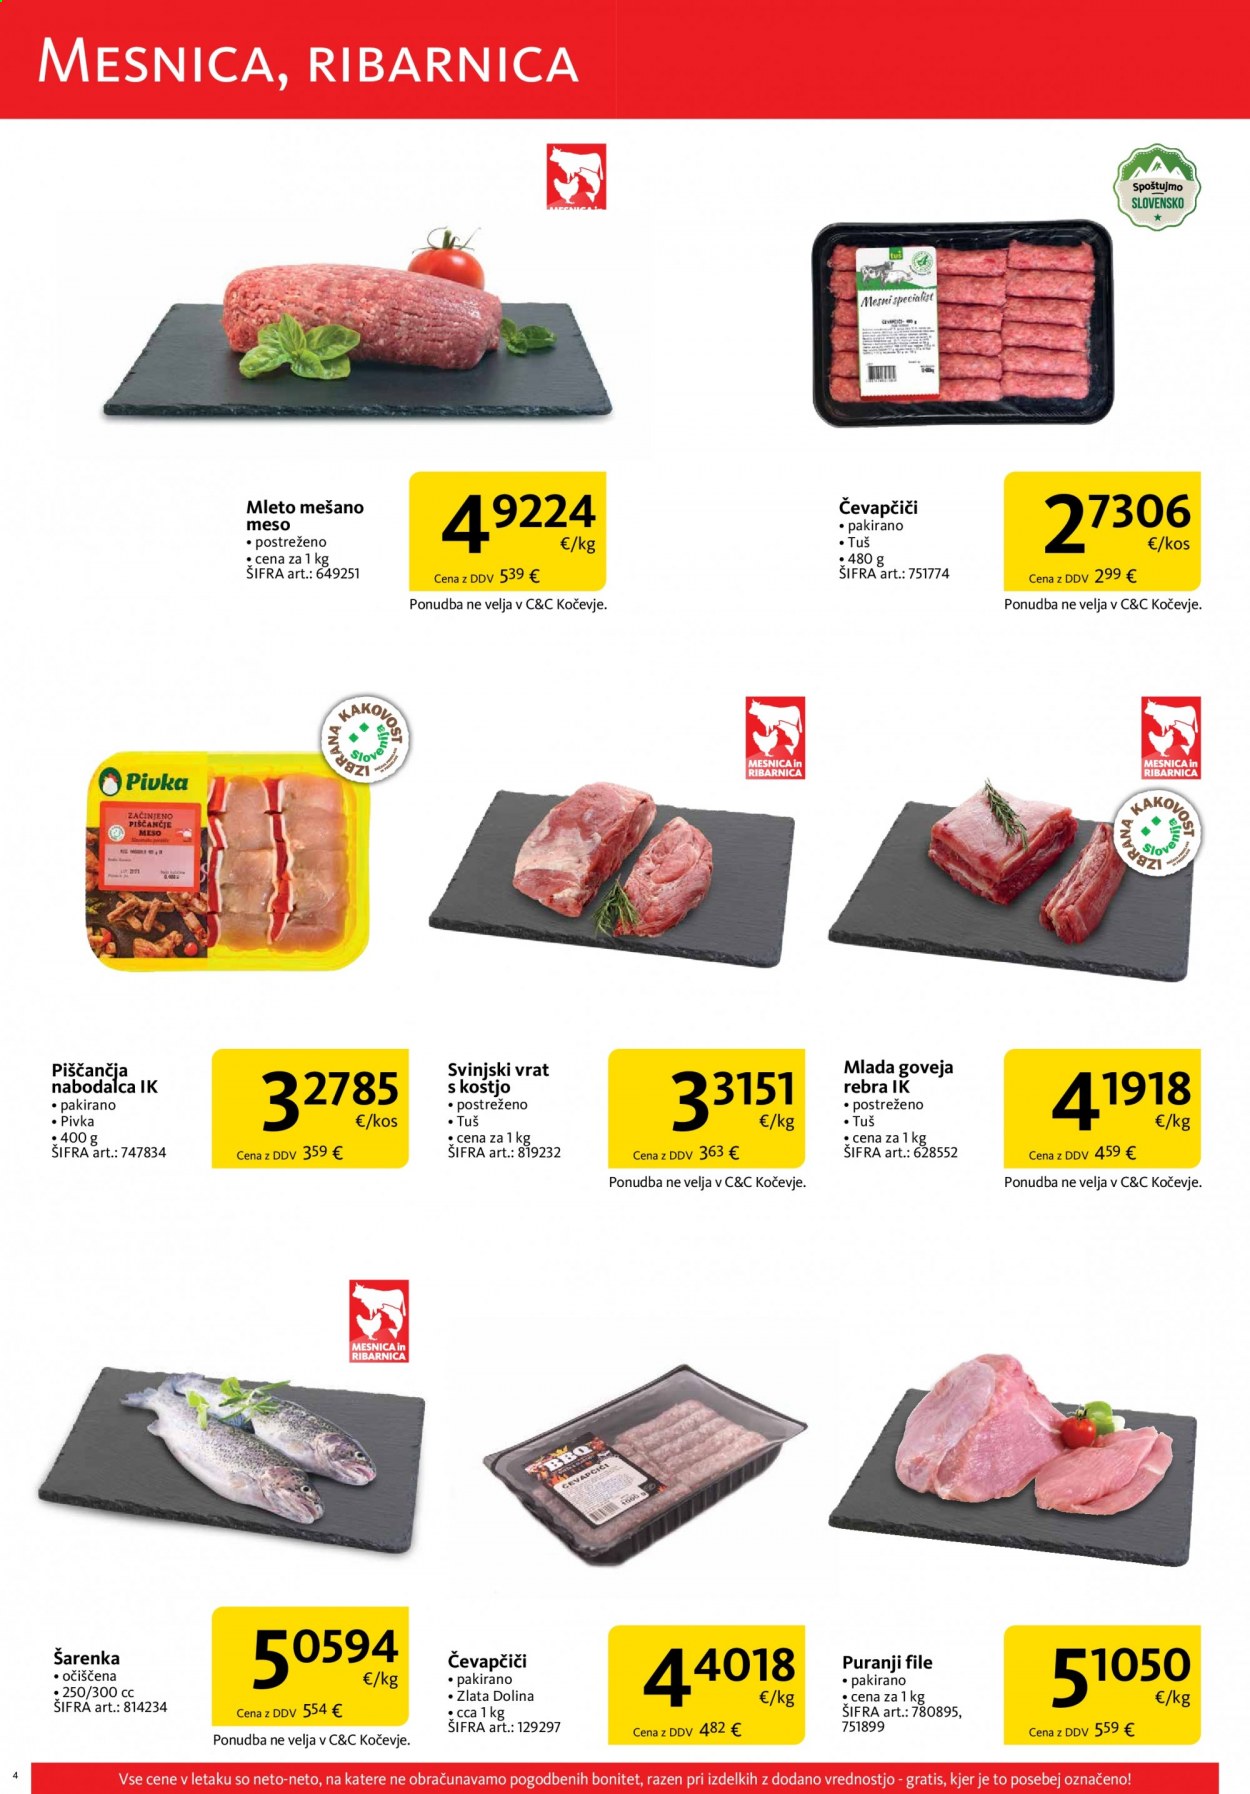 thumbnail - Tuš Cash & Carry katalog - 1.7.2021 - 31.7.2021 - Ponudba izdelkov - Pivka, puranji file, puranje meso, goveja rebra, goveje meso, mlada goveja rebra, mlado goveje meso, rebra, svinjski vrat, svinjski vrat s kostjo, svinjsko meso. Stran 4.